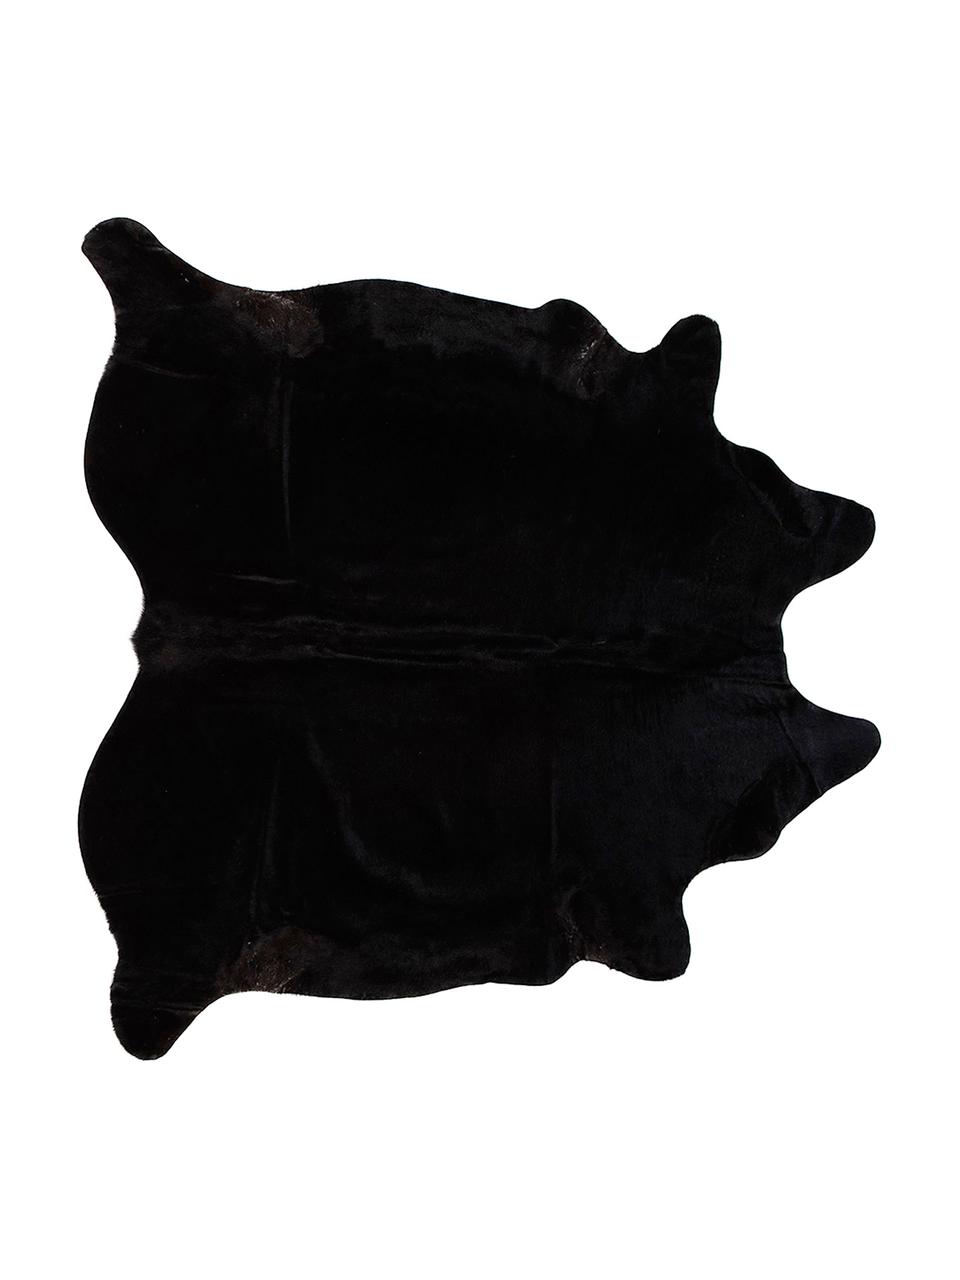 Tapis en peau de vache Lana, Peau de vache, Noir, larg. 180 x long. 200 cm